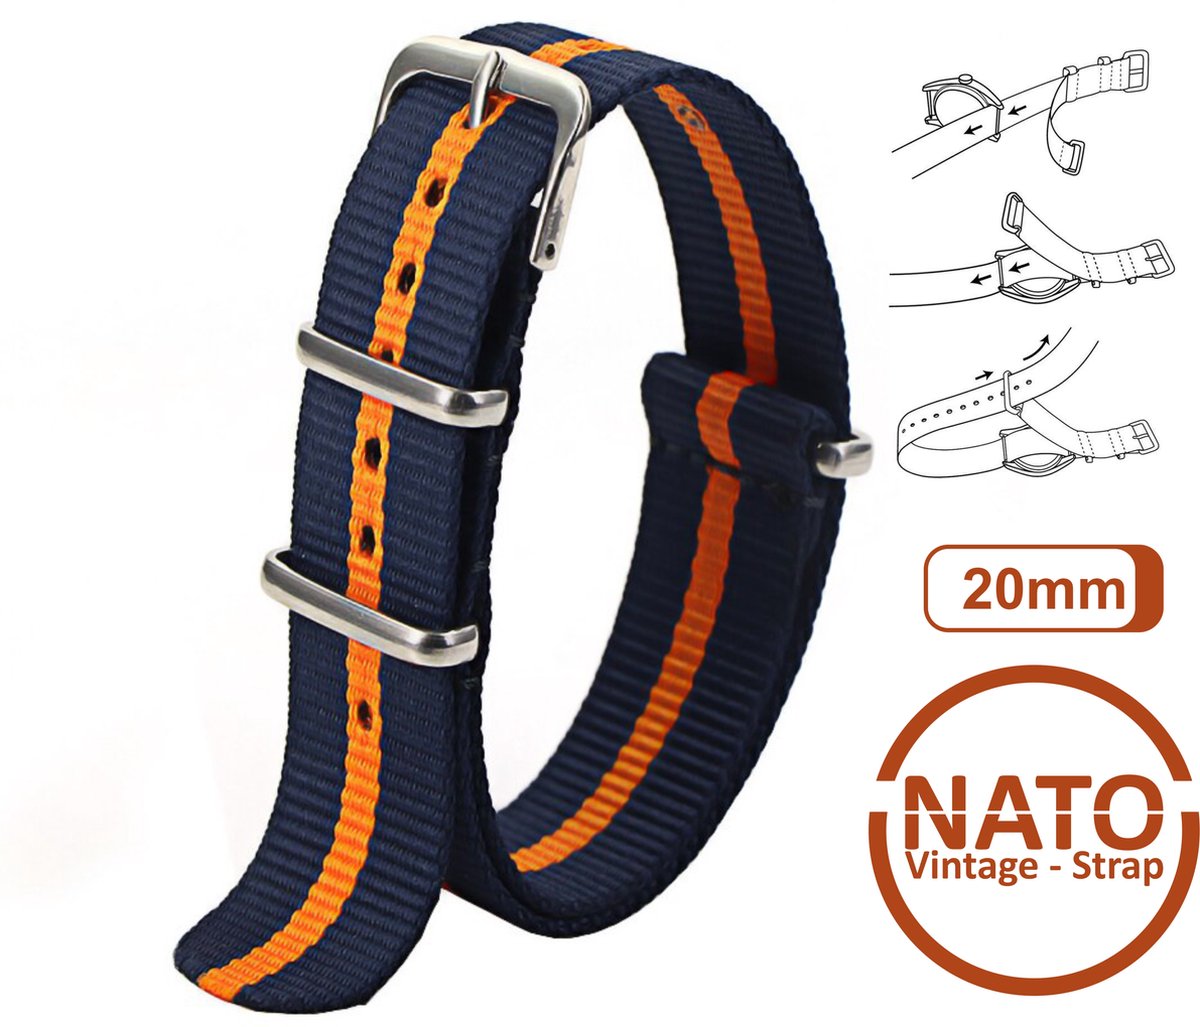 20mm Nato Strap Blauw met Oranje streep - Vintage James Bond - Nato Strap collectie - Mannen - Horlogebanden - Blue Orange - 20 mm bandbreedte voor oa. Seiko Rolex Omega Casio en Citizen